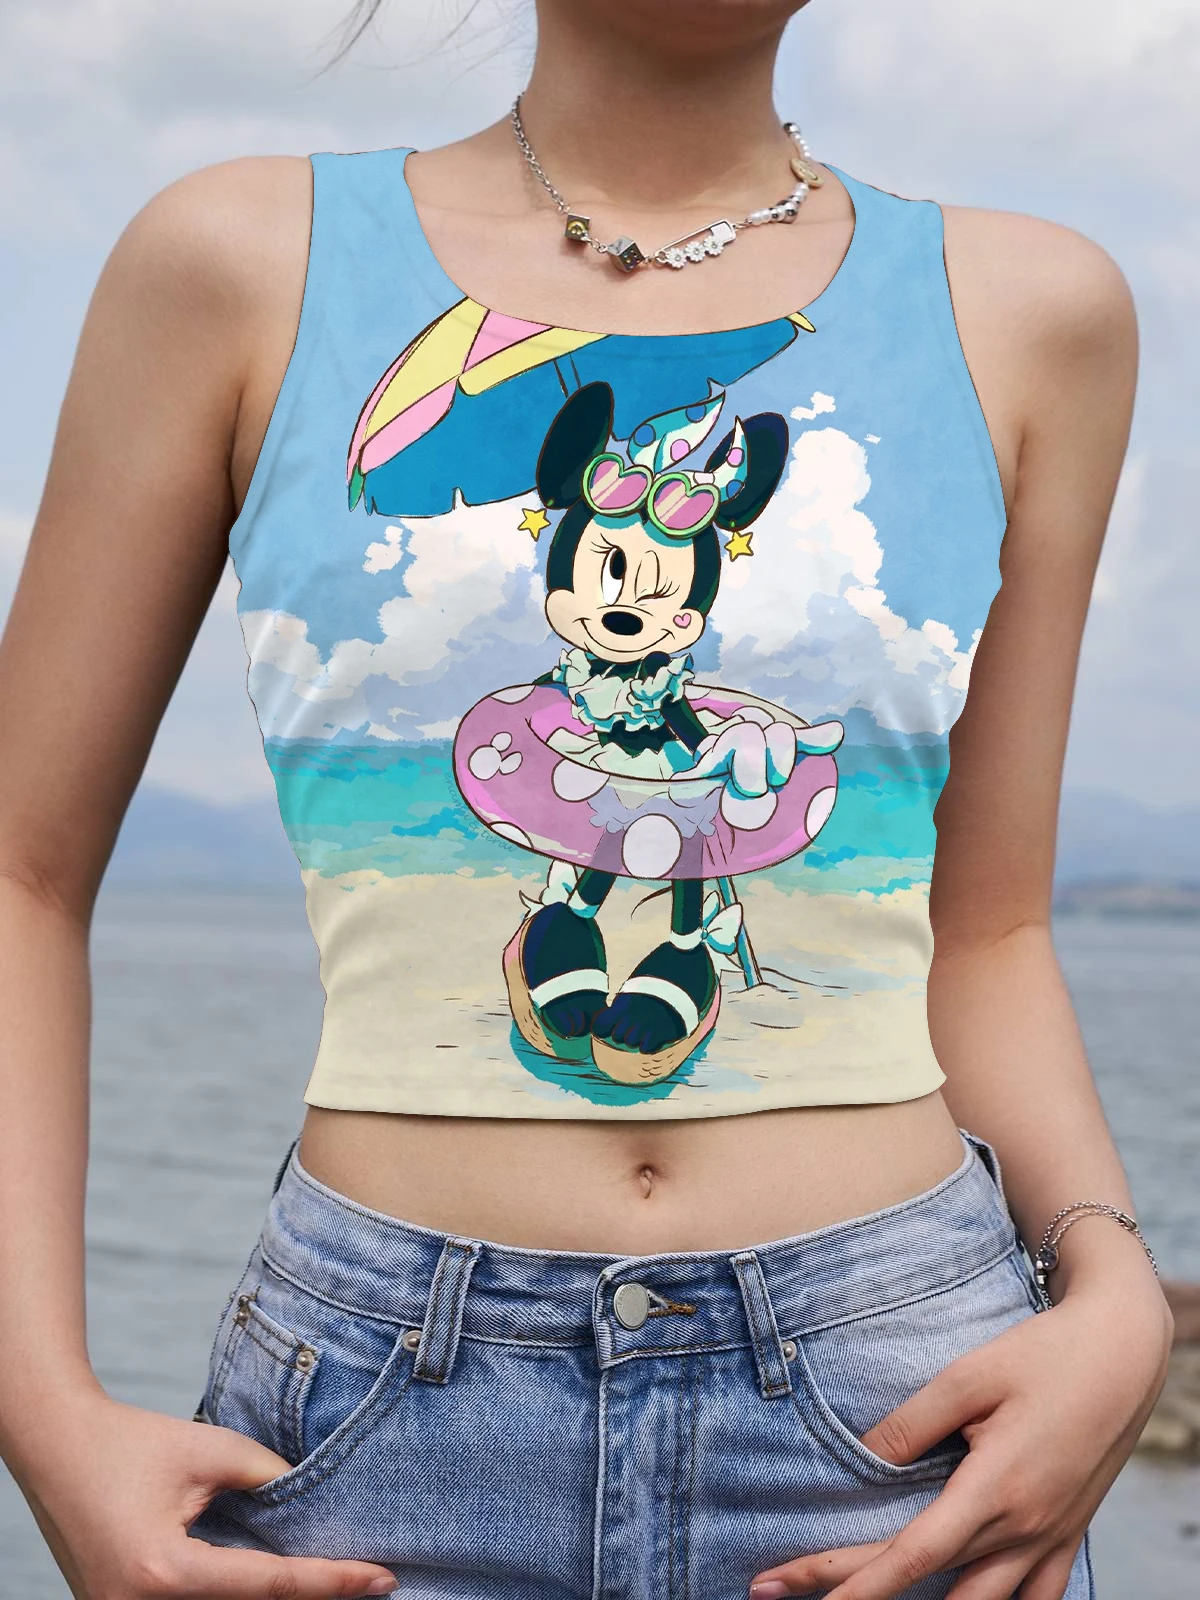 

Женская футболка Disney Y2k с Микки Маусом, сексуальный корсет, модные укороченные топы, майка без рукавов, женская одежда Минни Маус, футболки д...